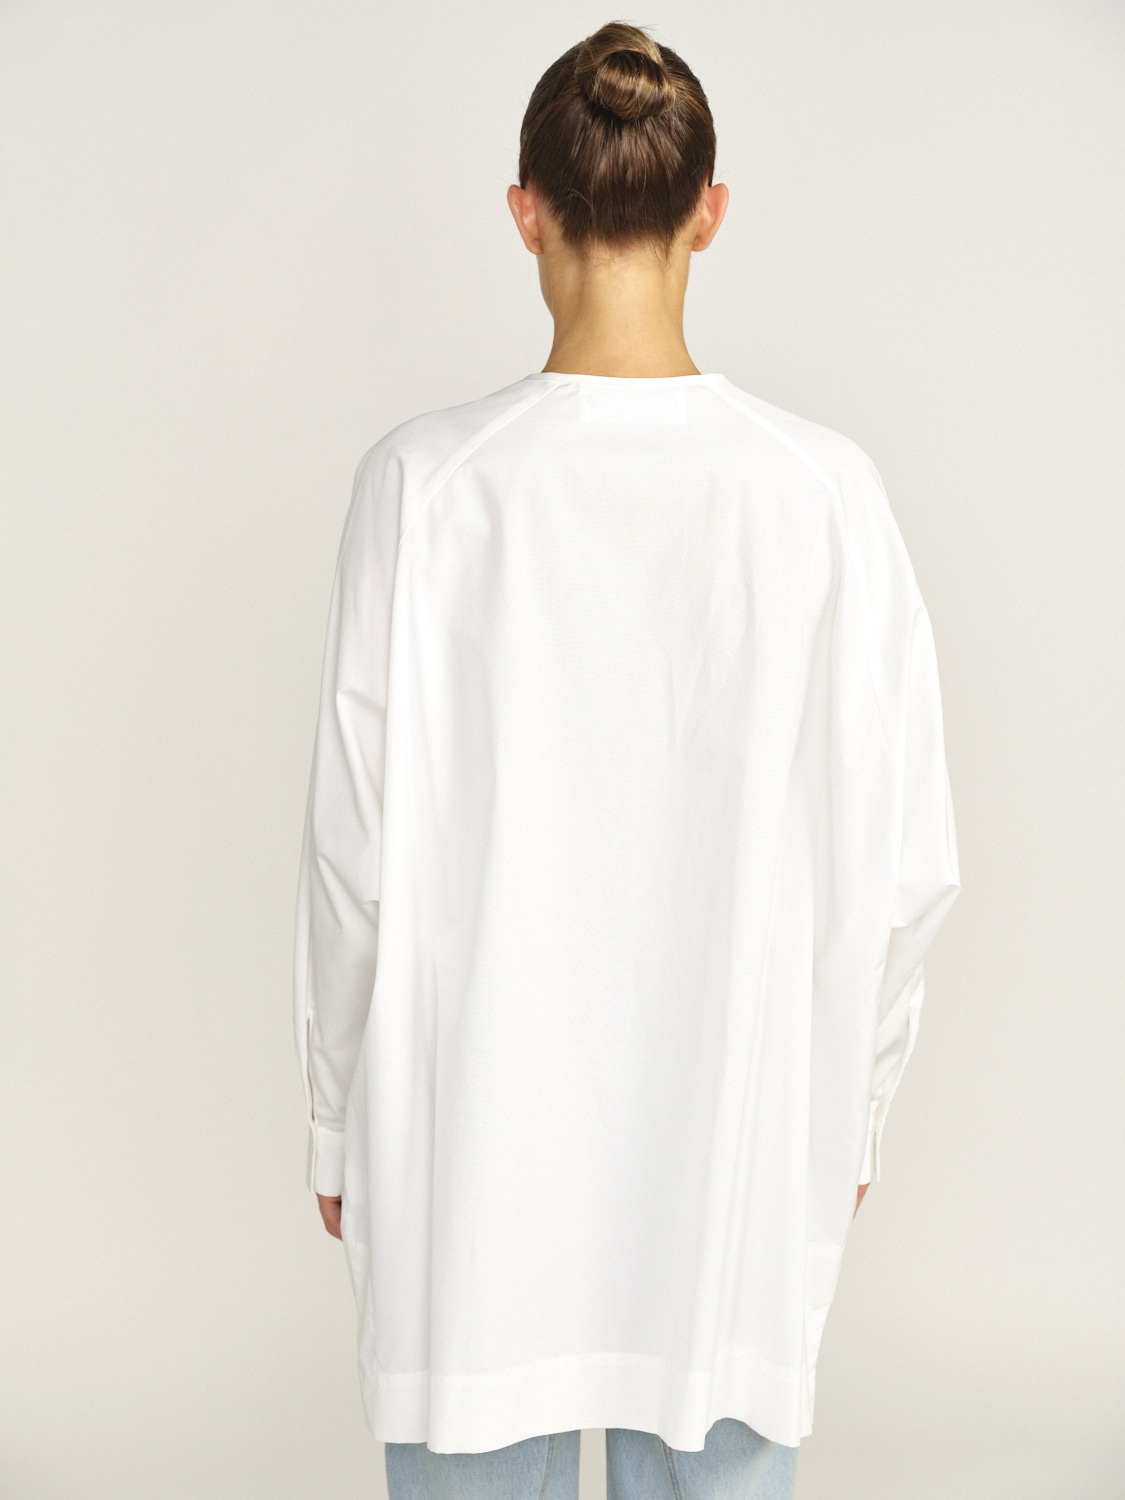 Eva Mann Oversized Bluse mit geradem Schnitt aus Baumwolle weiss 34